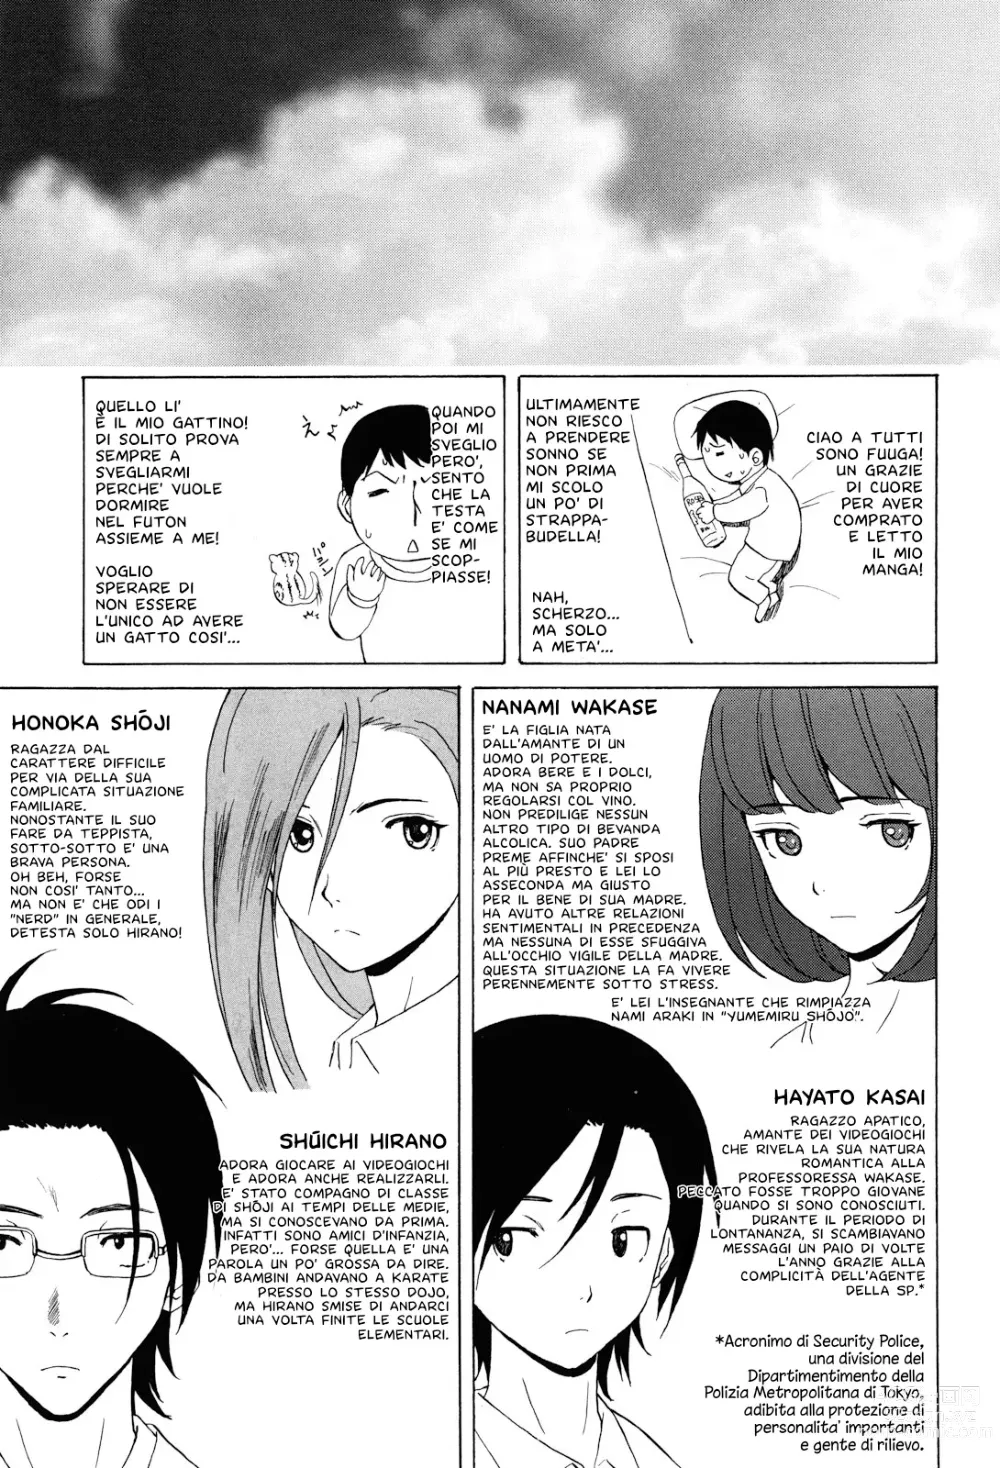 Page 254 of manga Sei Gentilmente Desiderato dalla tua Prof (decensored)